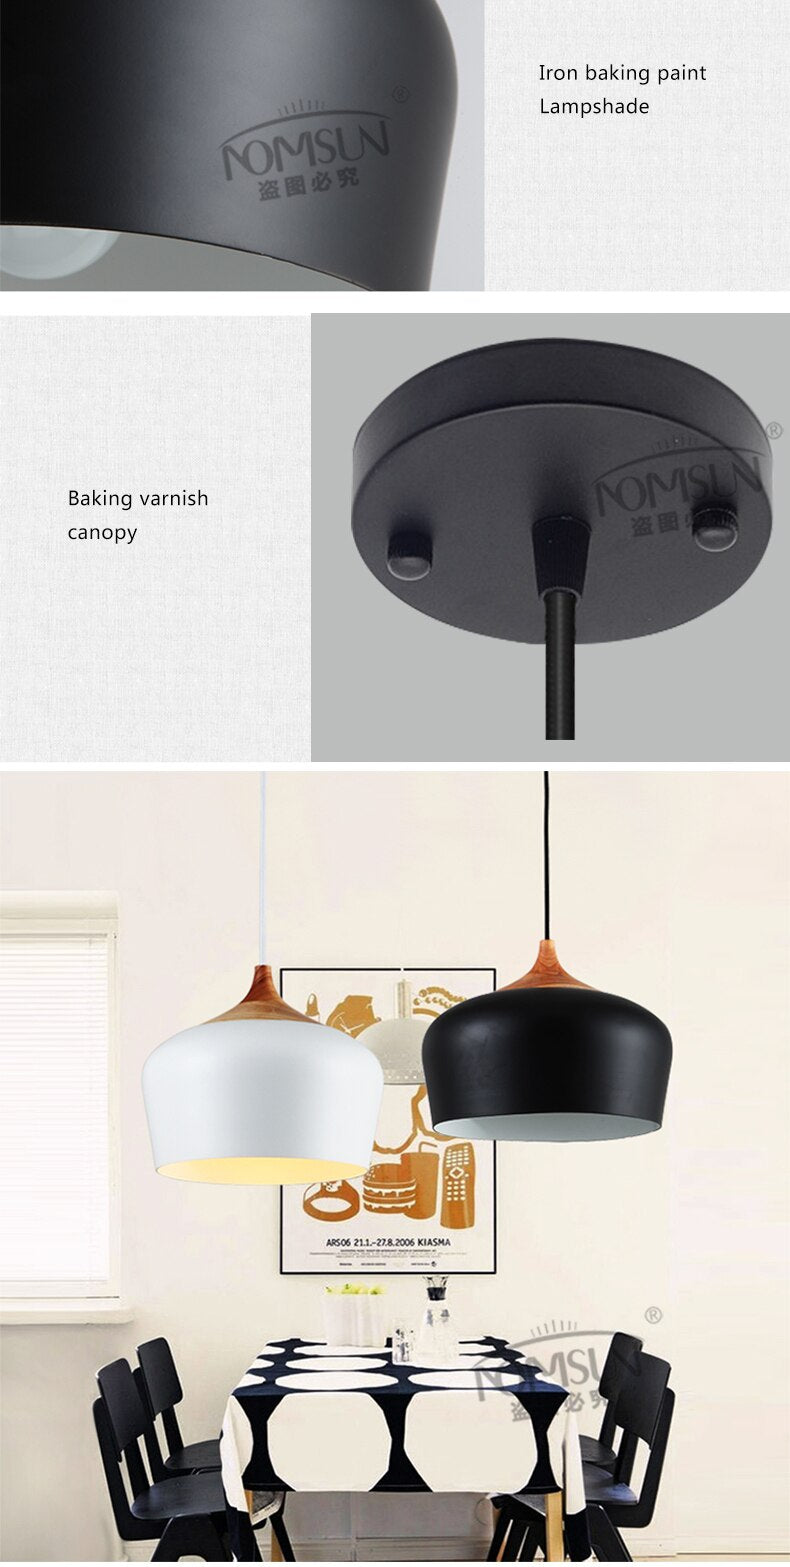 Modern Nordic Hanging LED Lamp